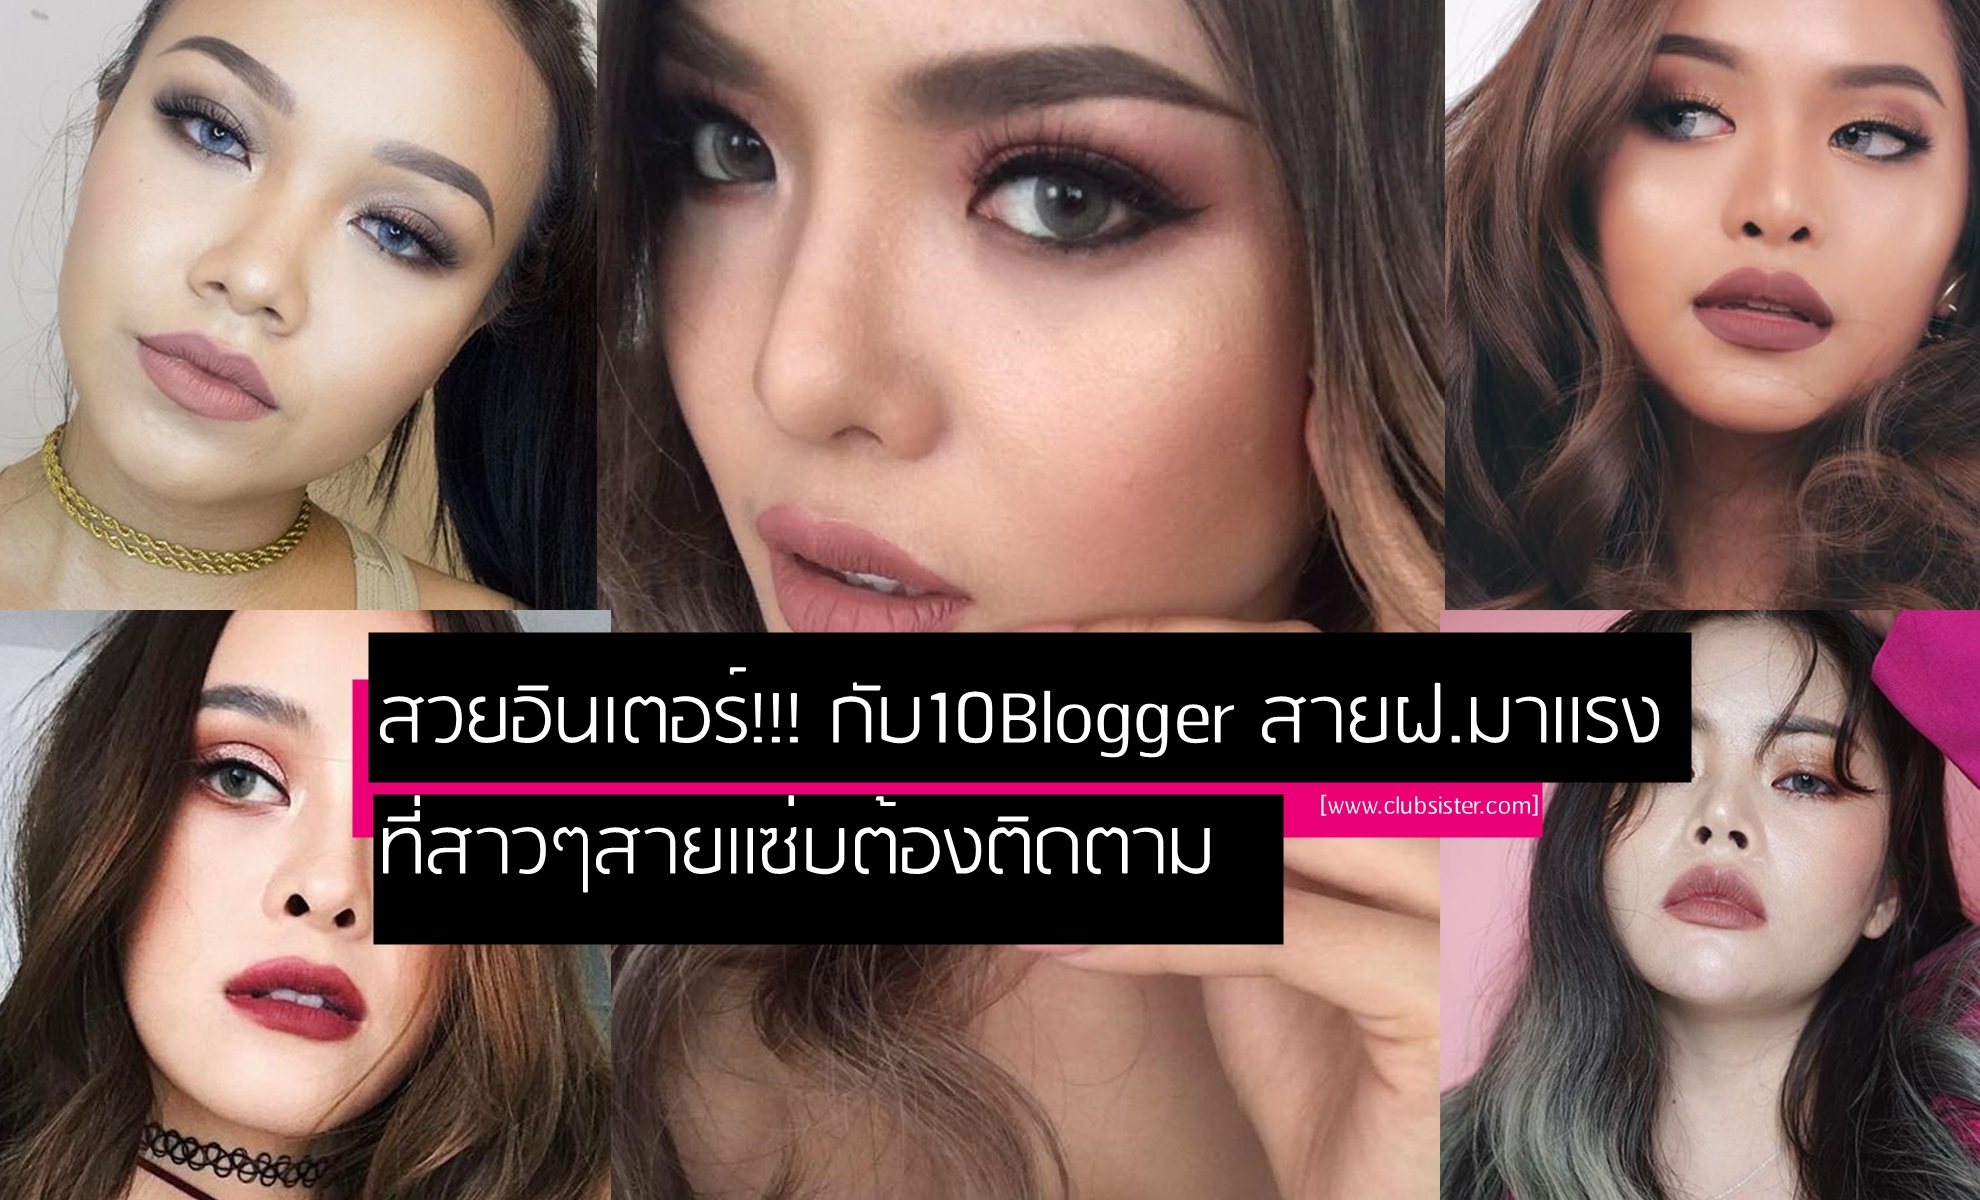 สวยอินเตอร์!!! กับ 10 Beauty Blogger สาย ฝ. มาแรง ที่สาวๆสายแซ่บต้องติดตาม